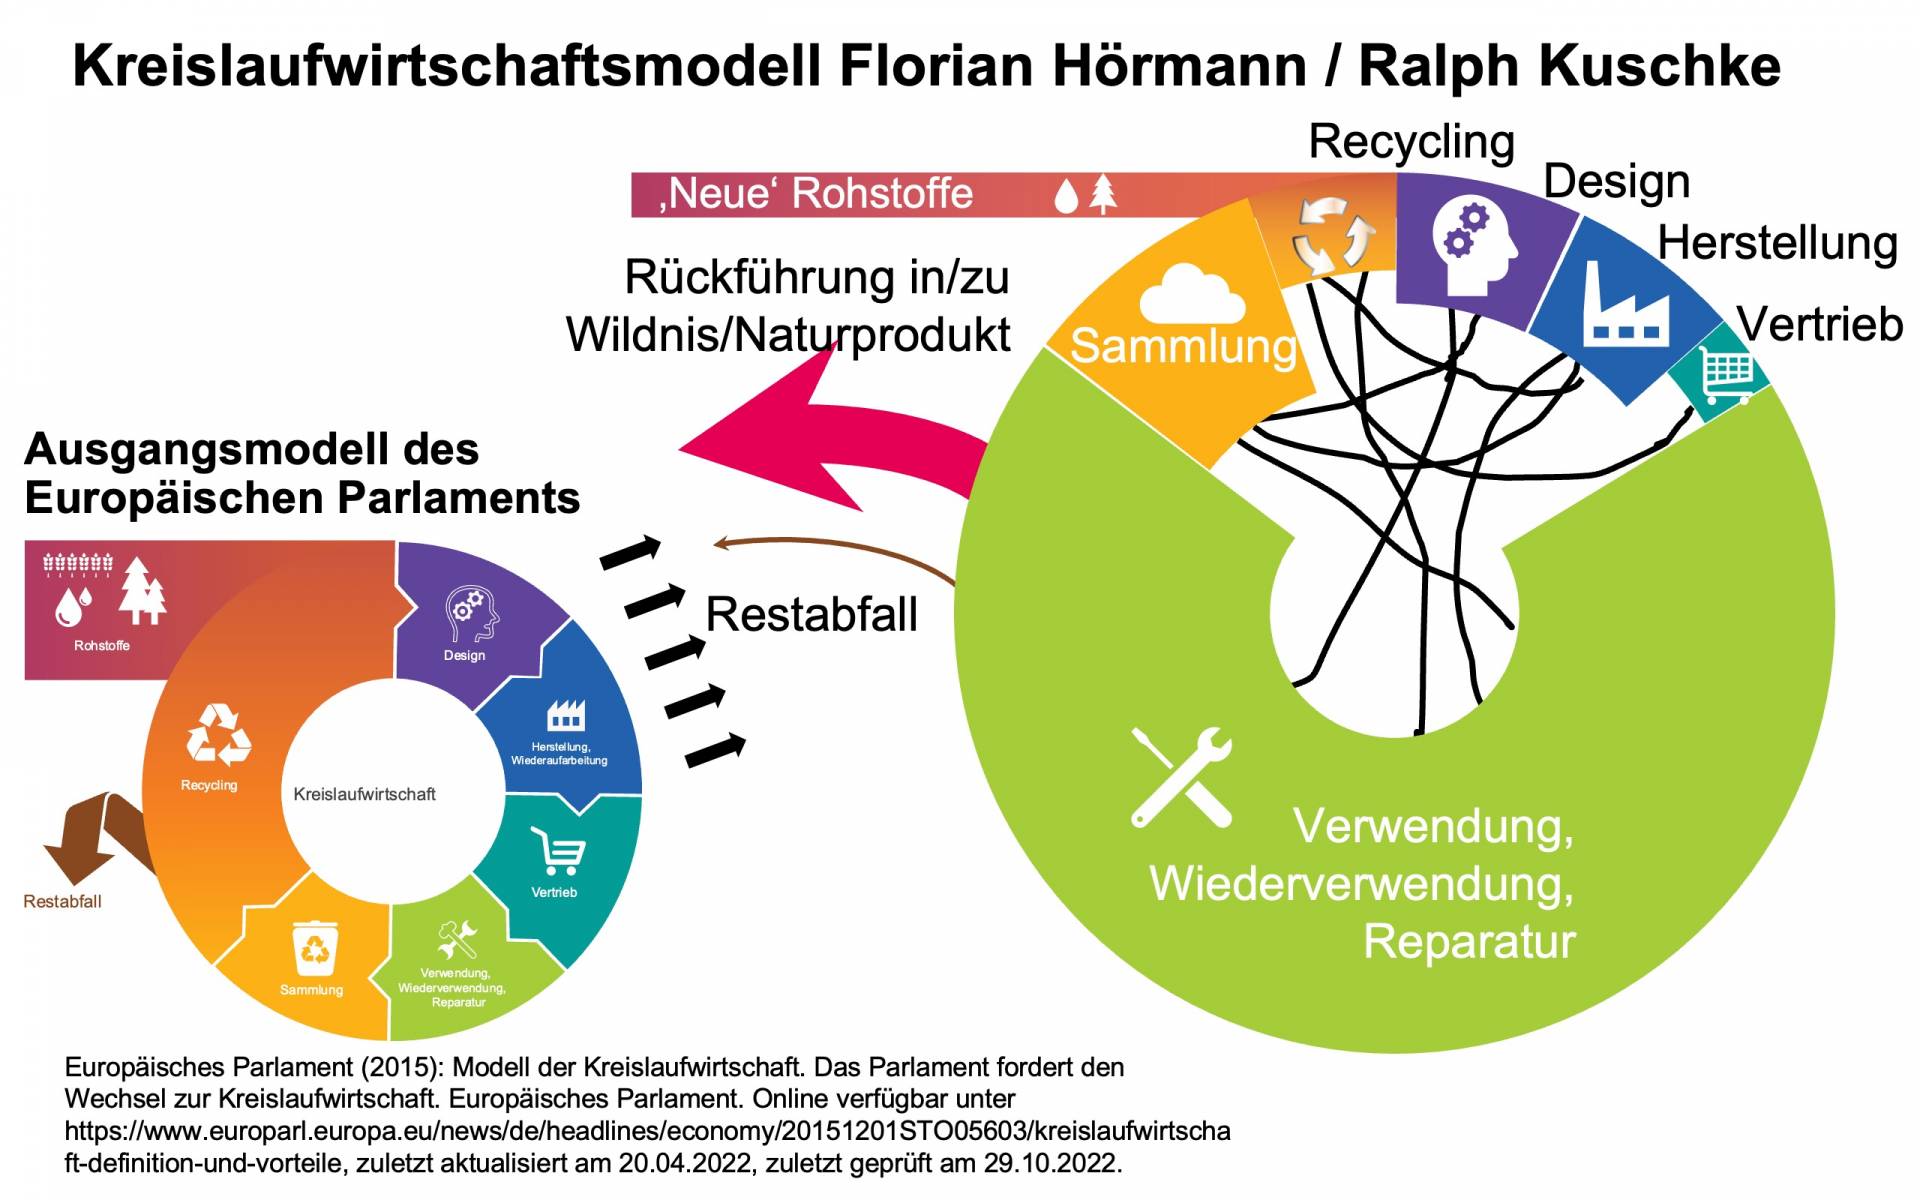 Kreislaufwirtschaftsmodell von Hörmann und Kuschke im Gegensatz zum Kreislaufwirtschaftsmodell der EU-Parlaments